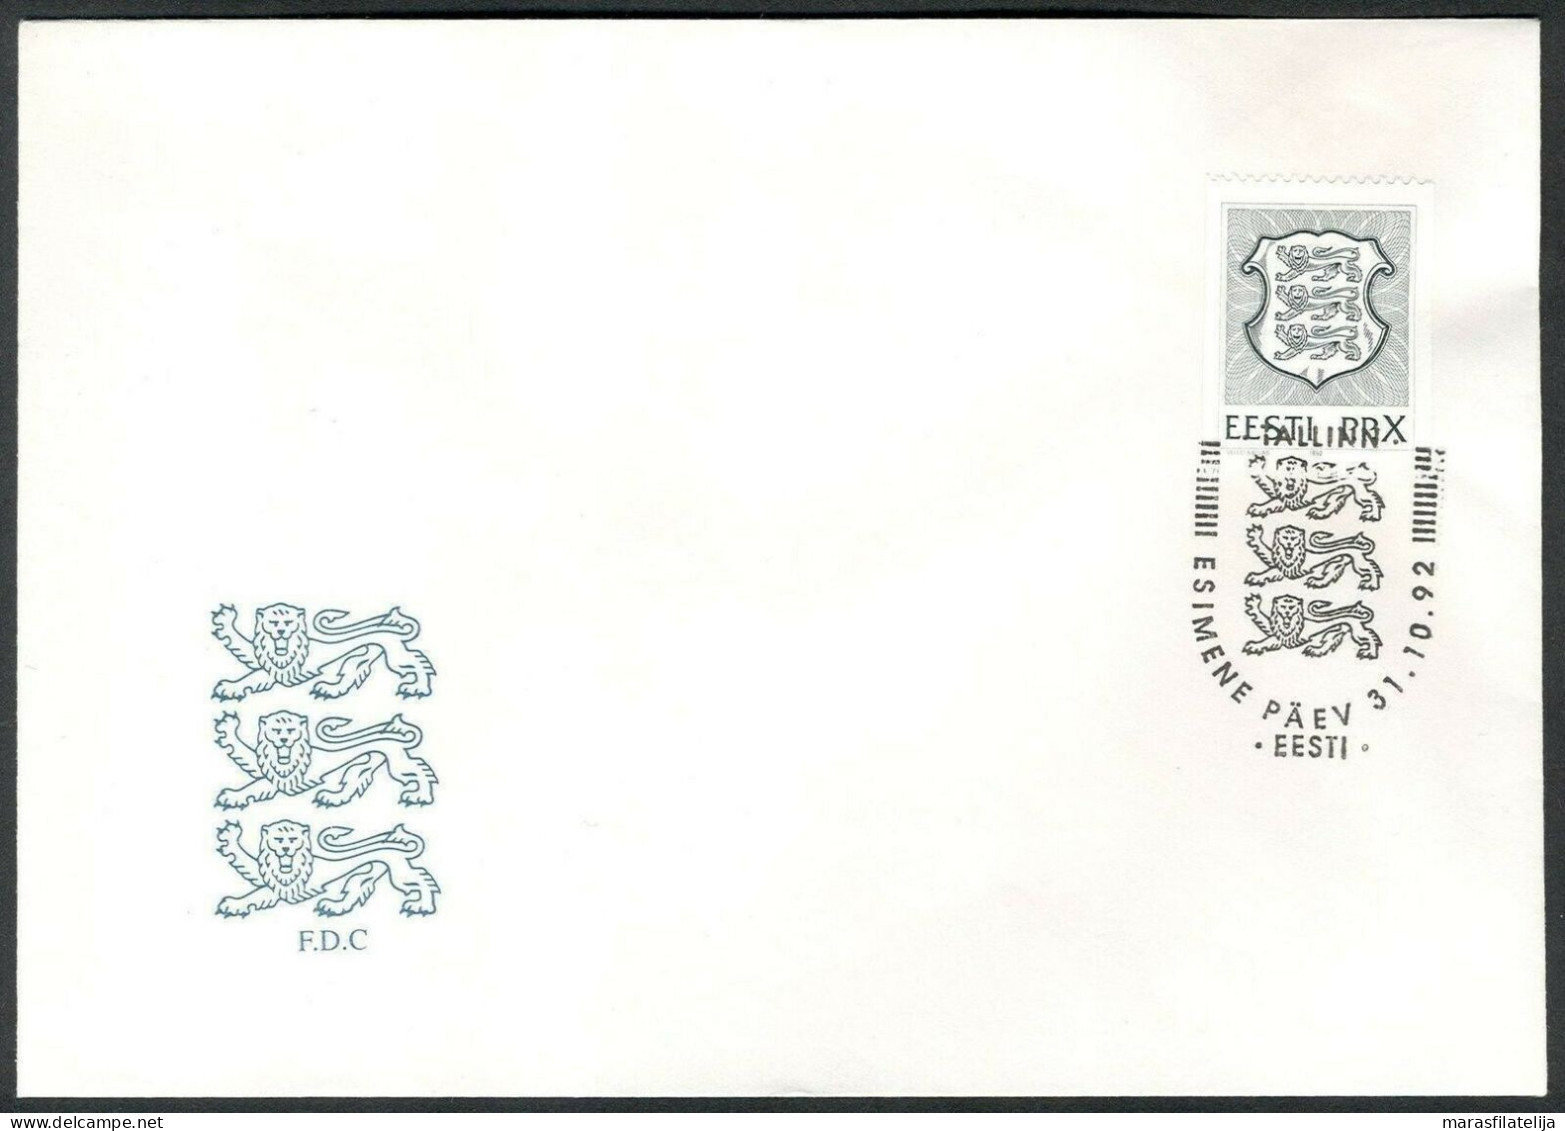 Estonia 1992, State Coat Of Arms, X Stamp (October), FDC - Estonia